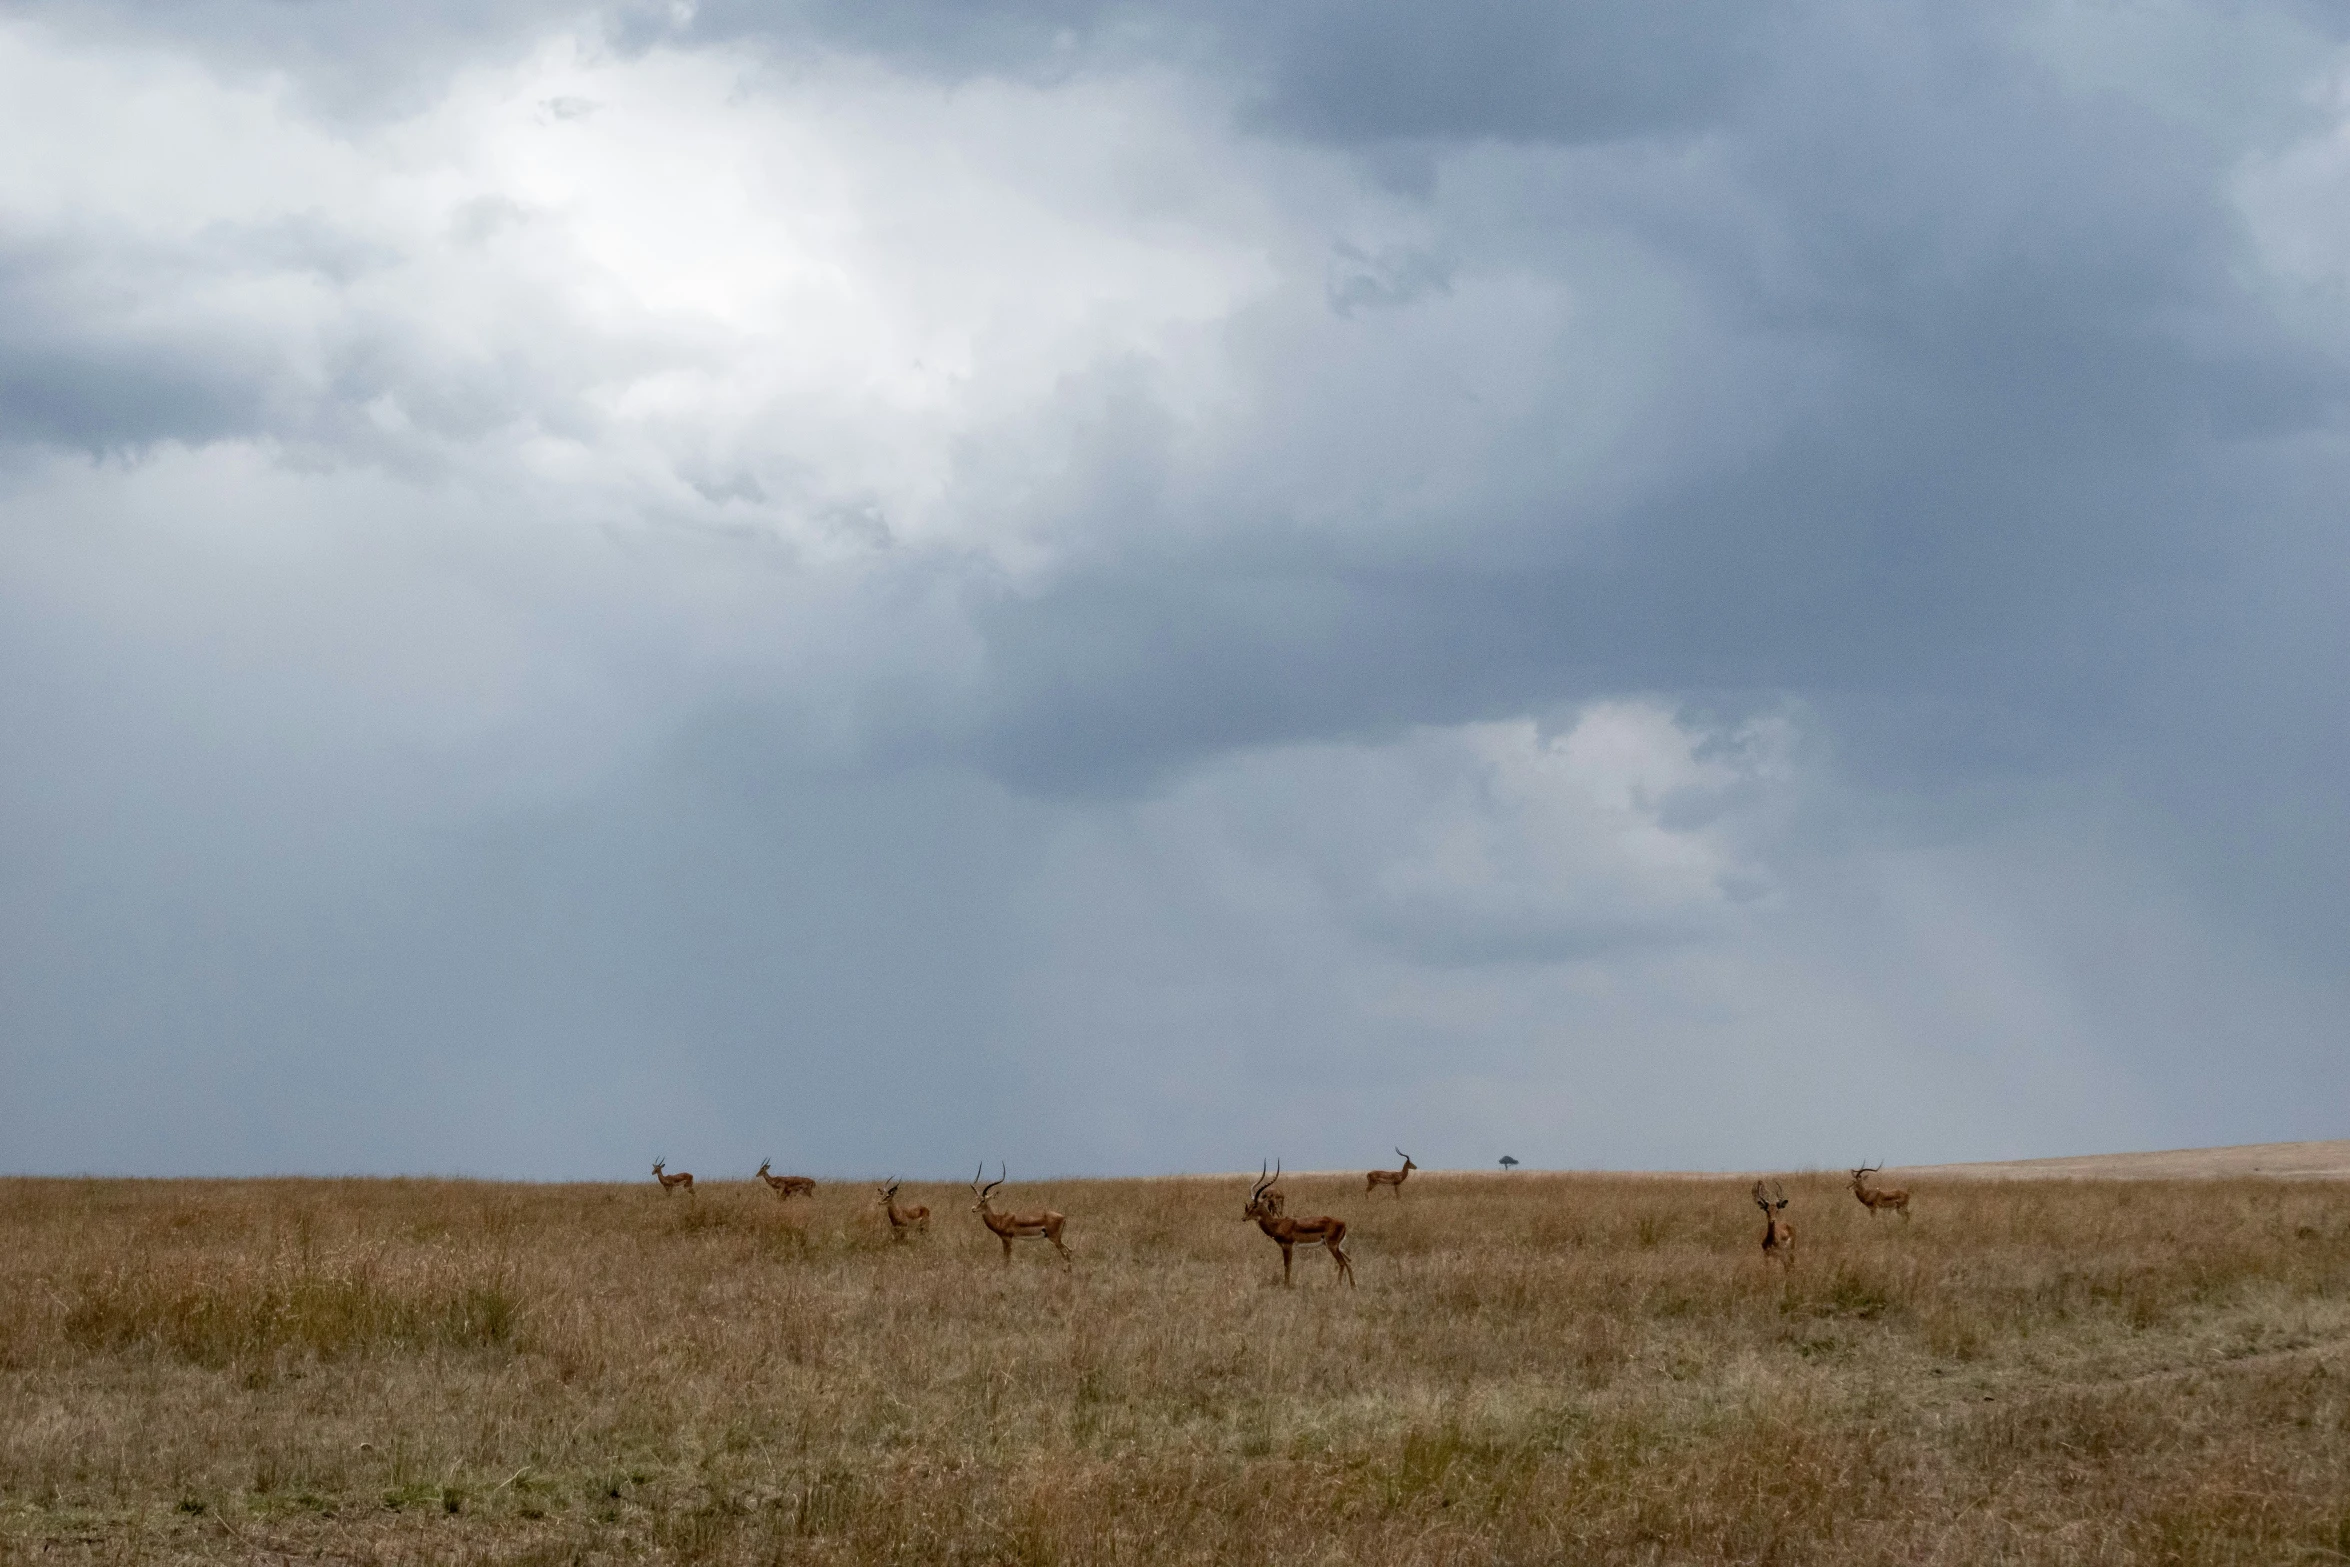 several deer walking across a field under cloudy skies